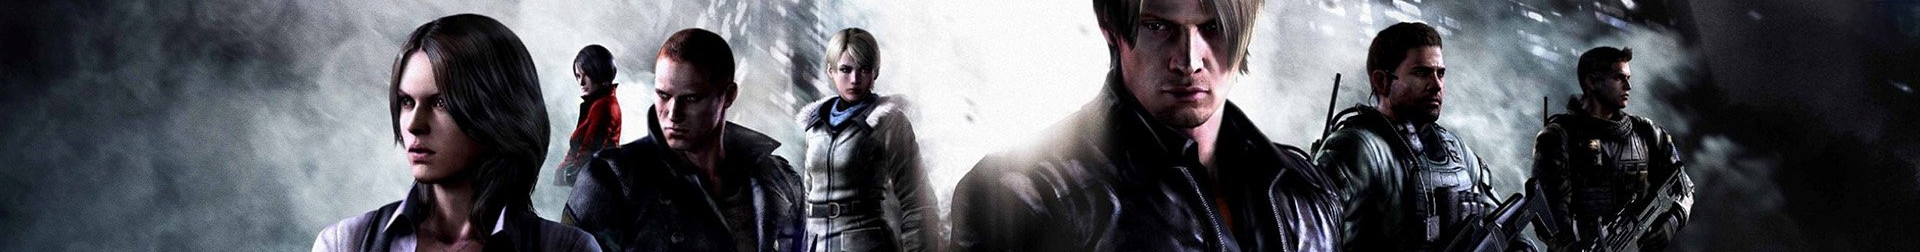 Resident Evil 6 Banner